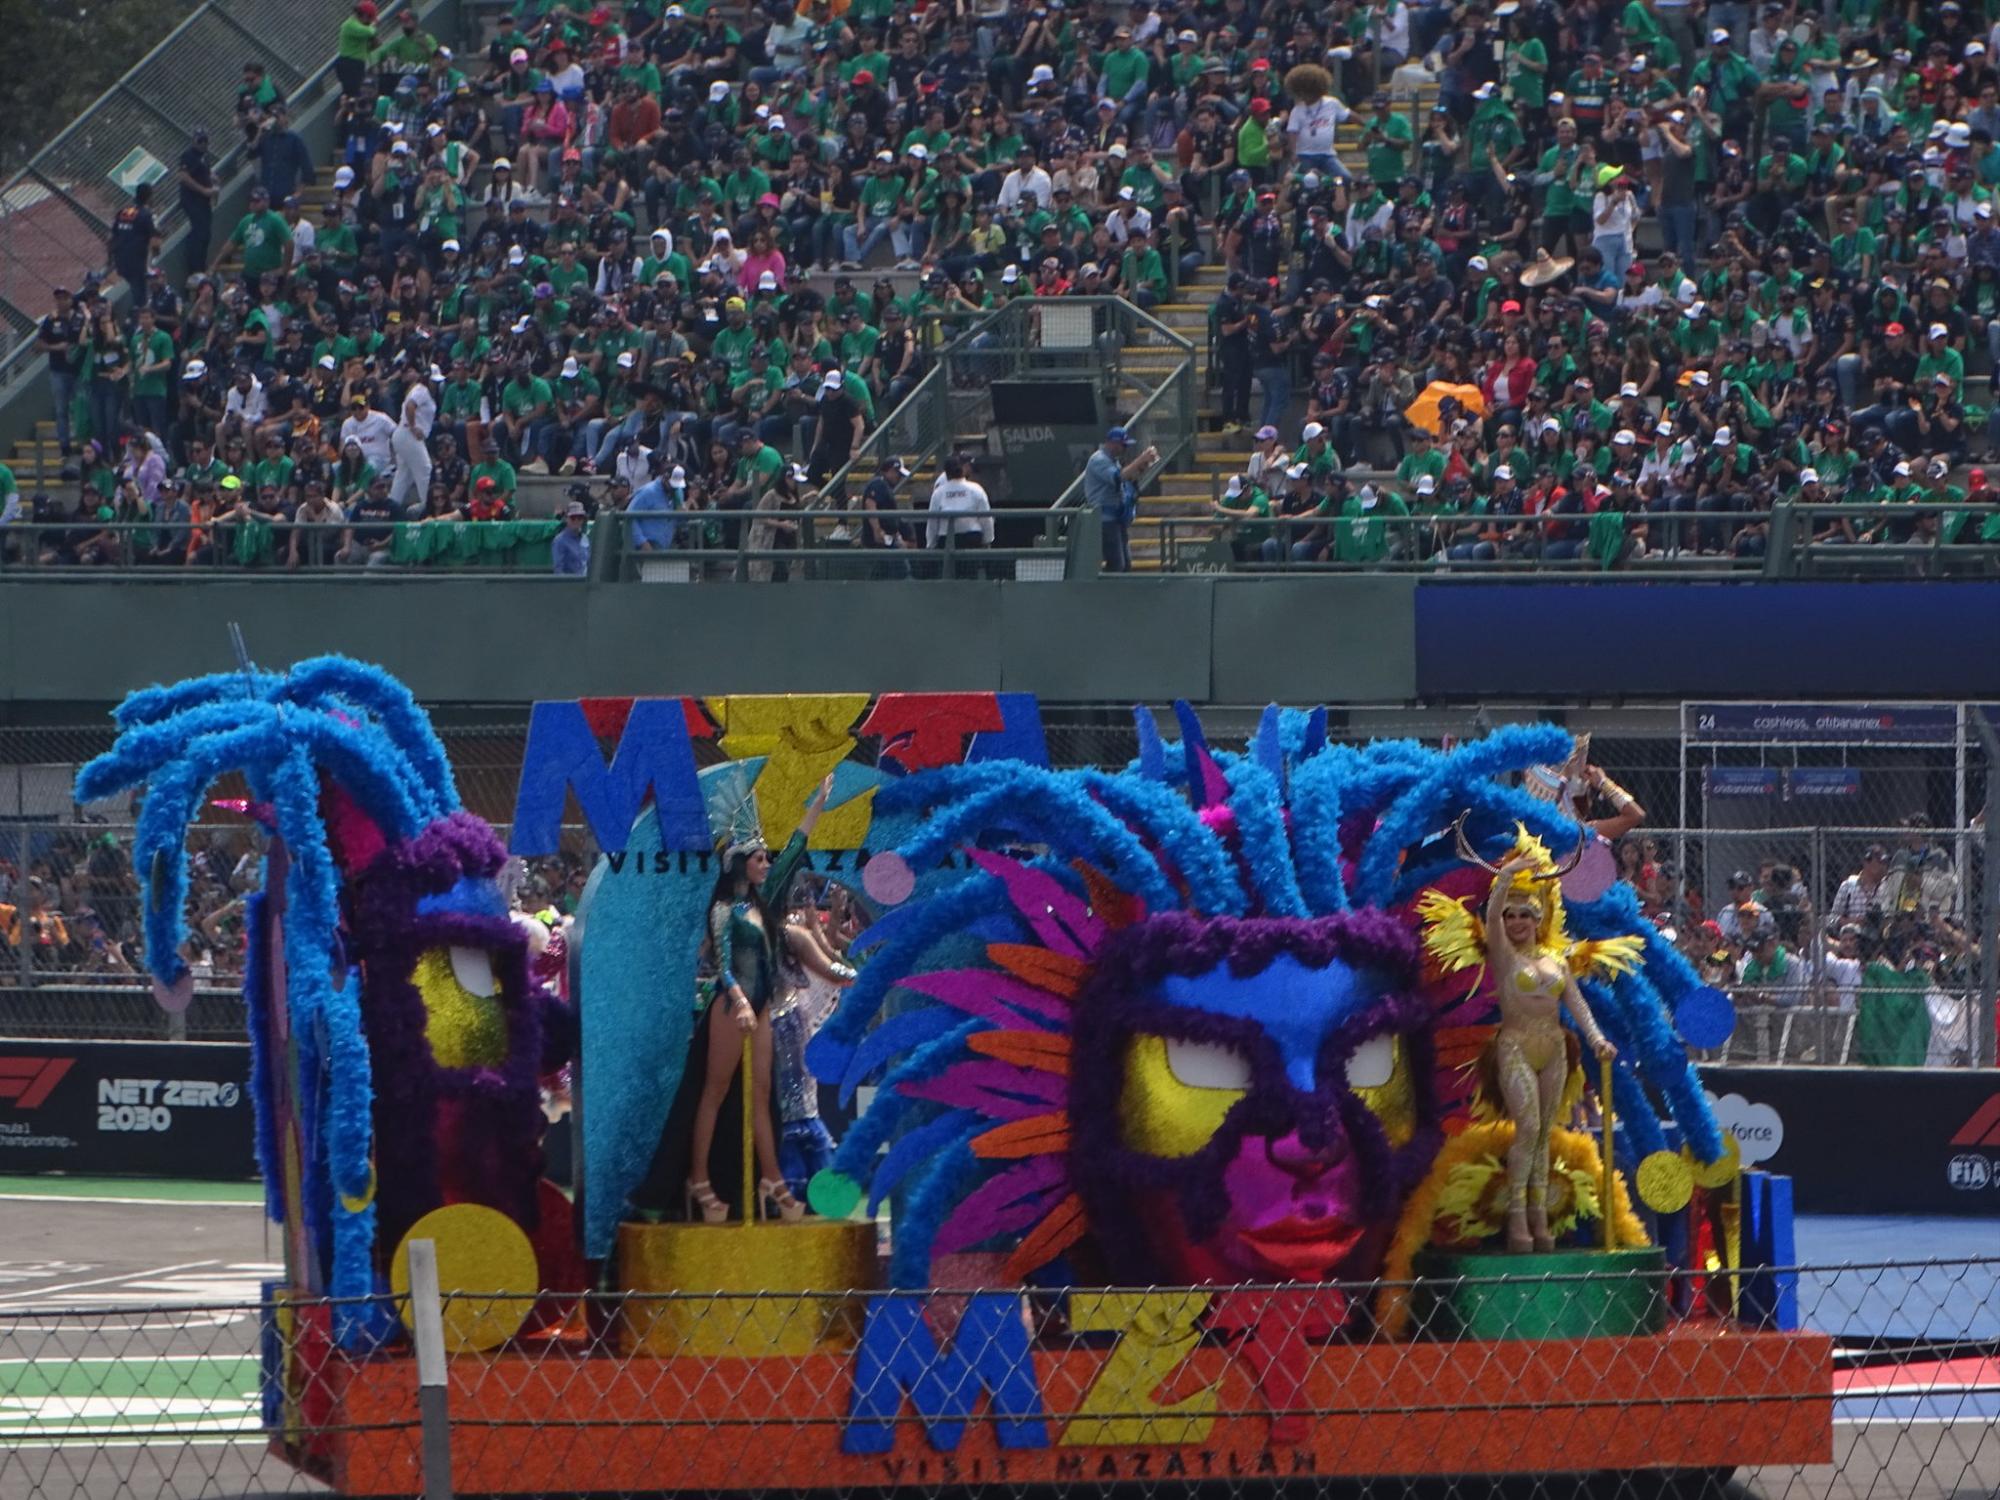 $!Alegra el Carnaval de Mazatlán al Gran Premio de México con su música y colorido